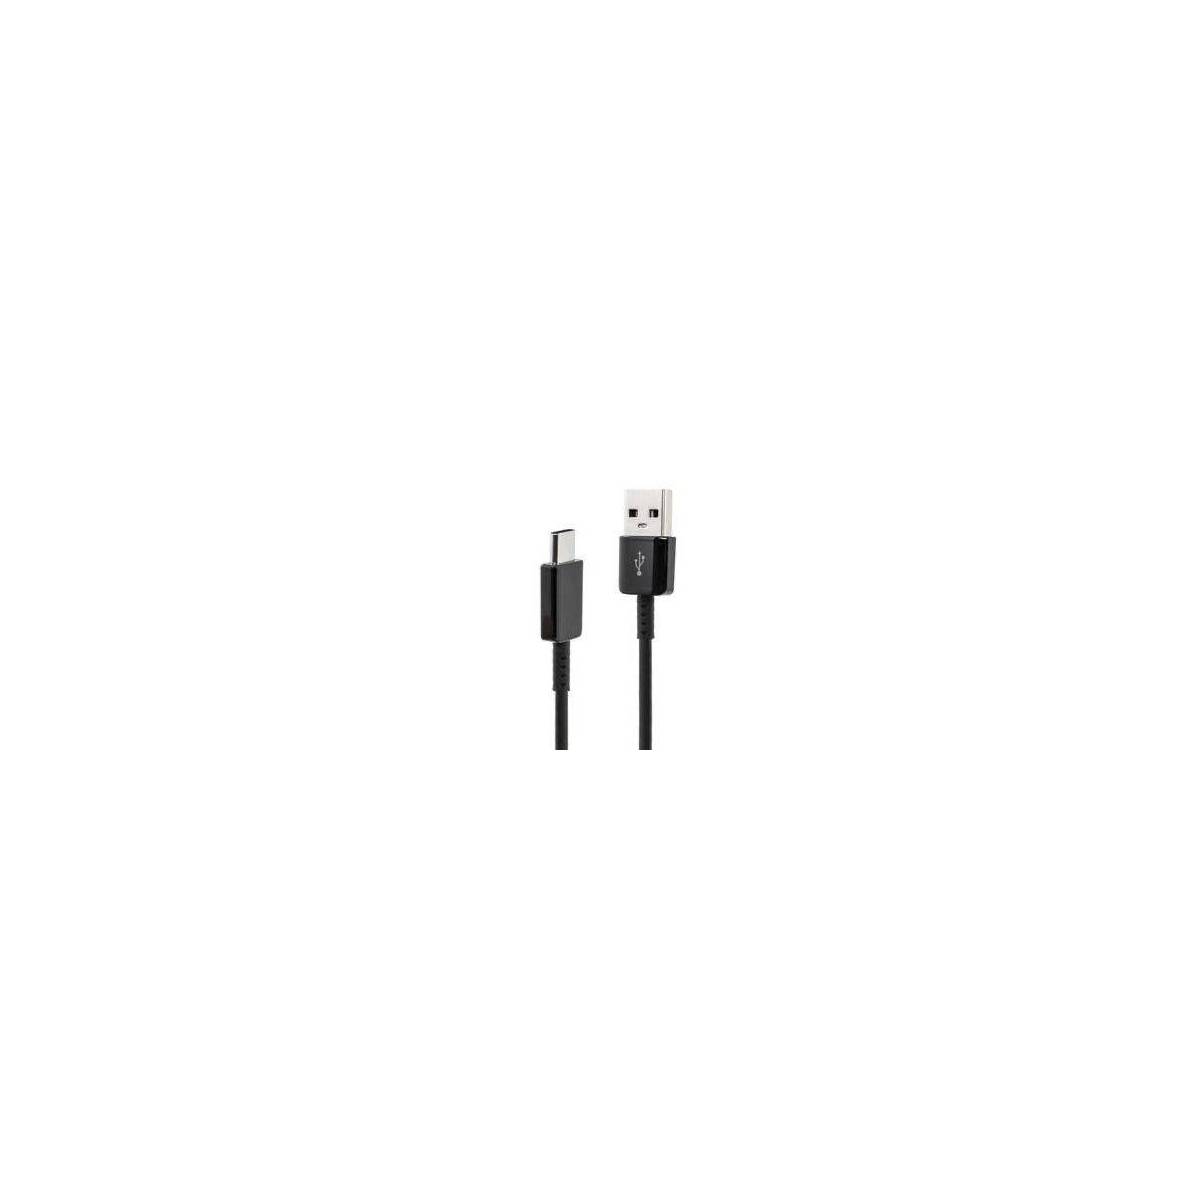 Cable USB-C Noir Samsung 1m20